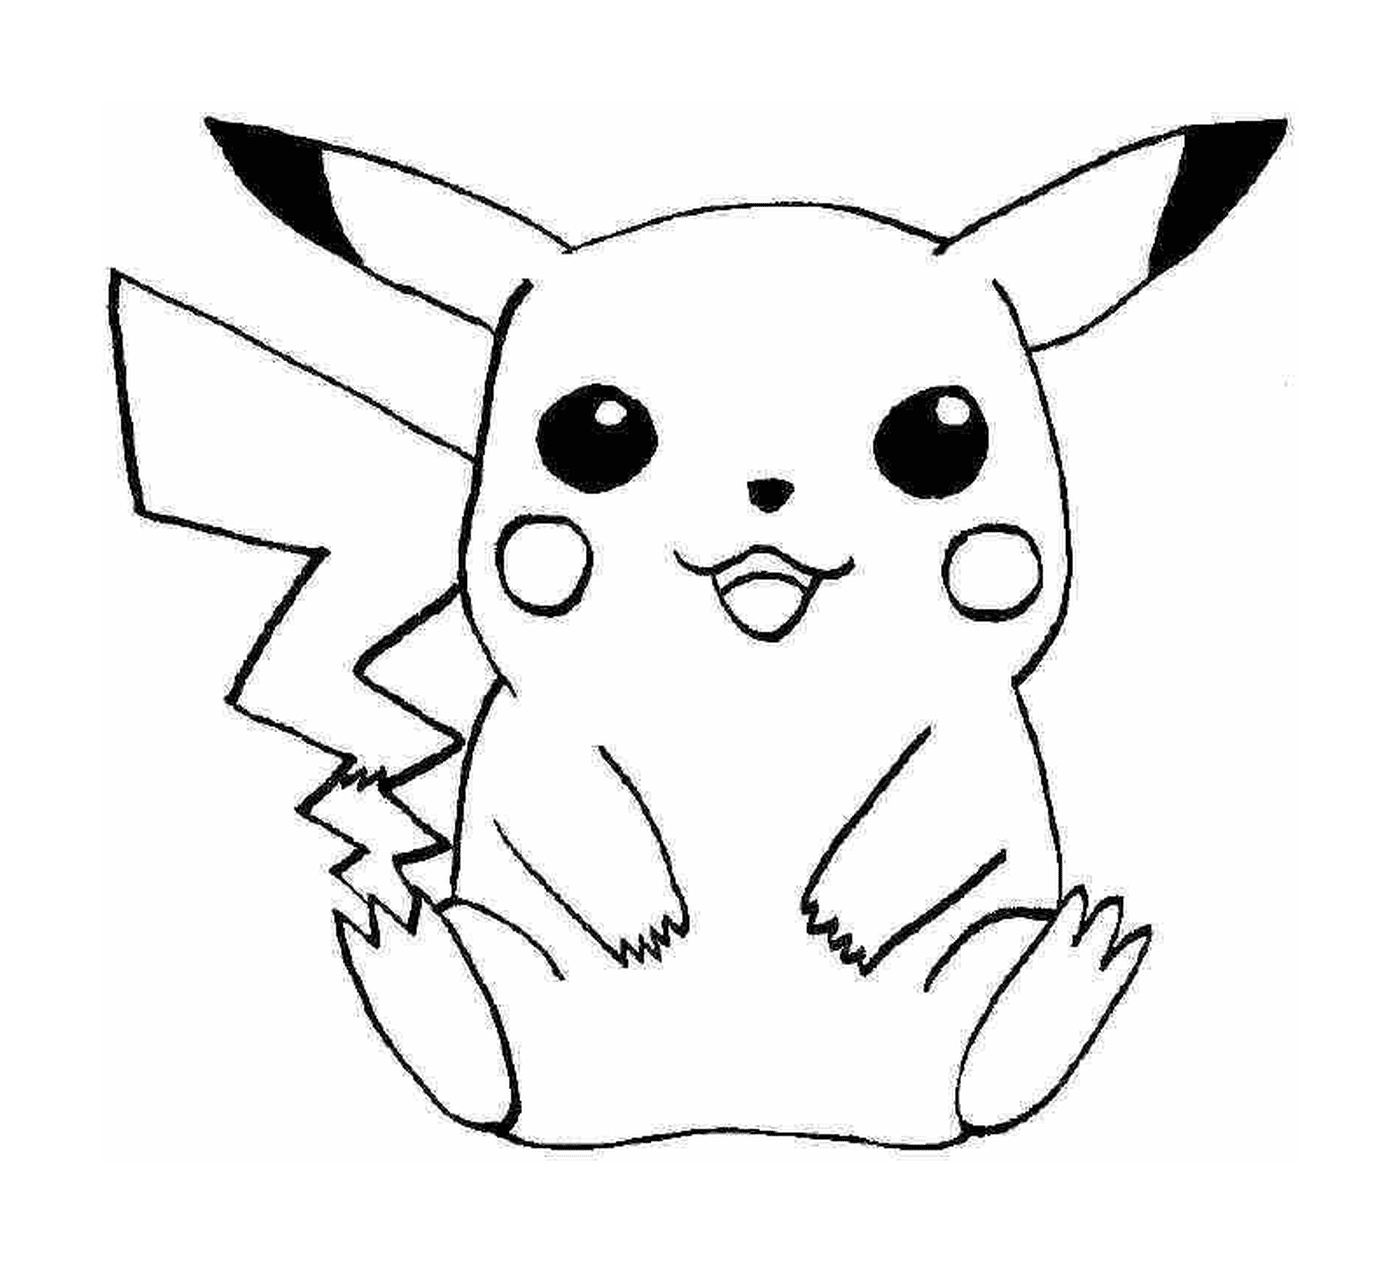  Pikachu, símbolo de la adoración 